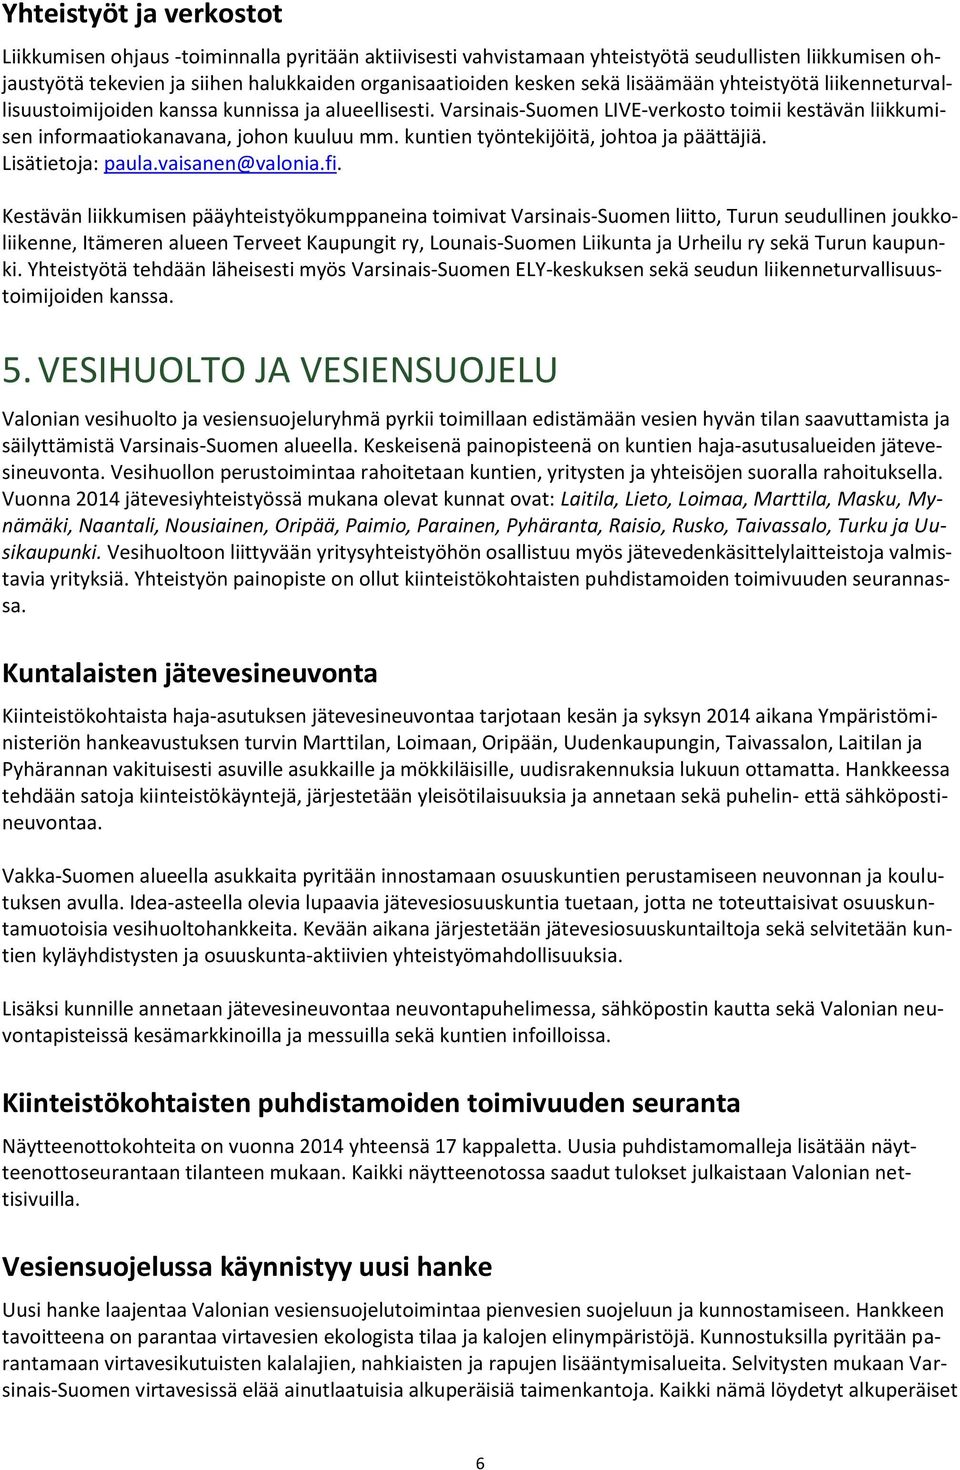 kuntien työntekijöitä, johtoa ja päättäjiä. Lisätietoja: paula.vaisanen@valonia.fi.